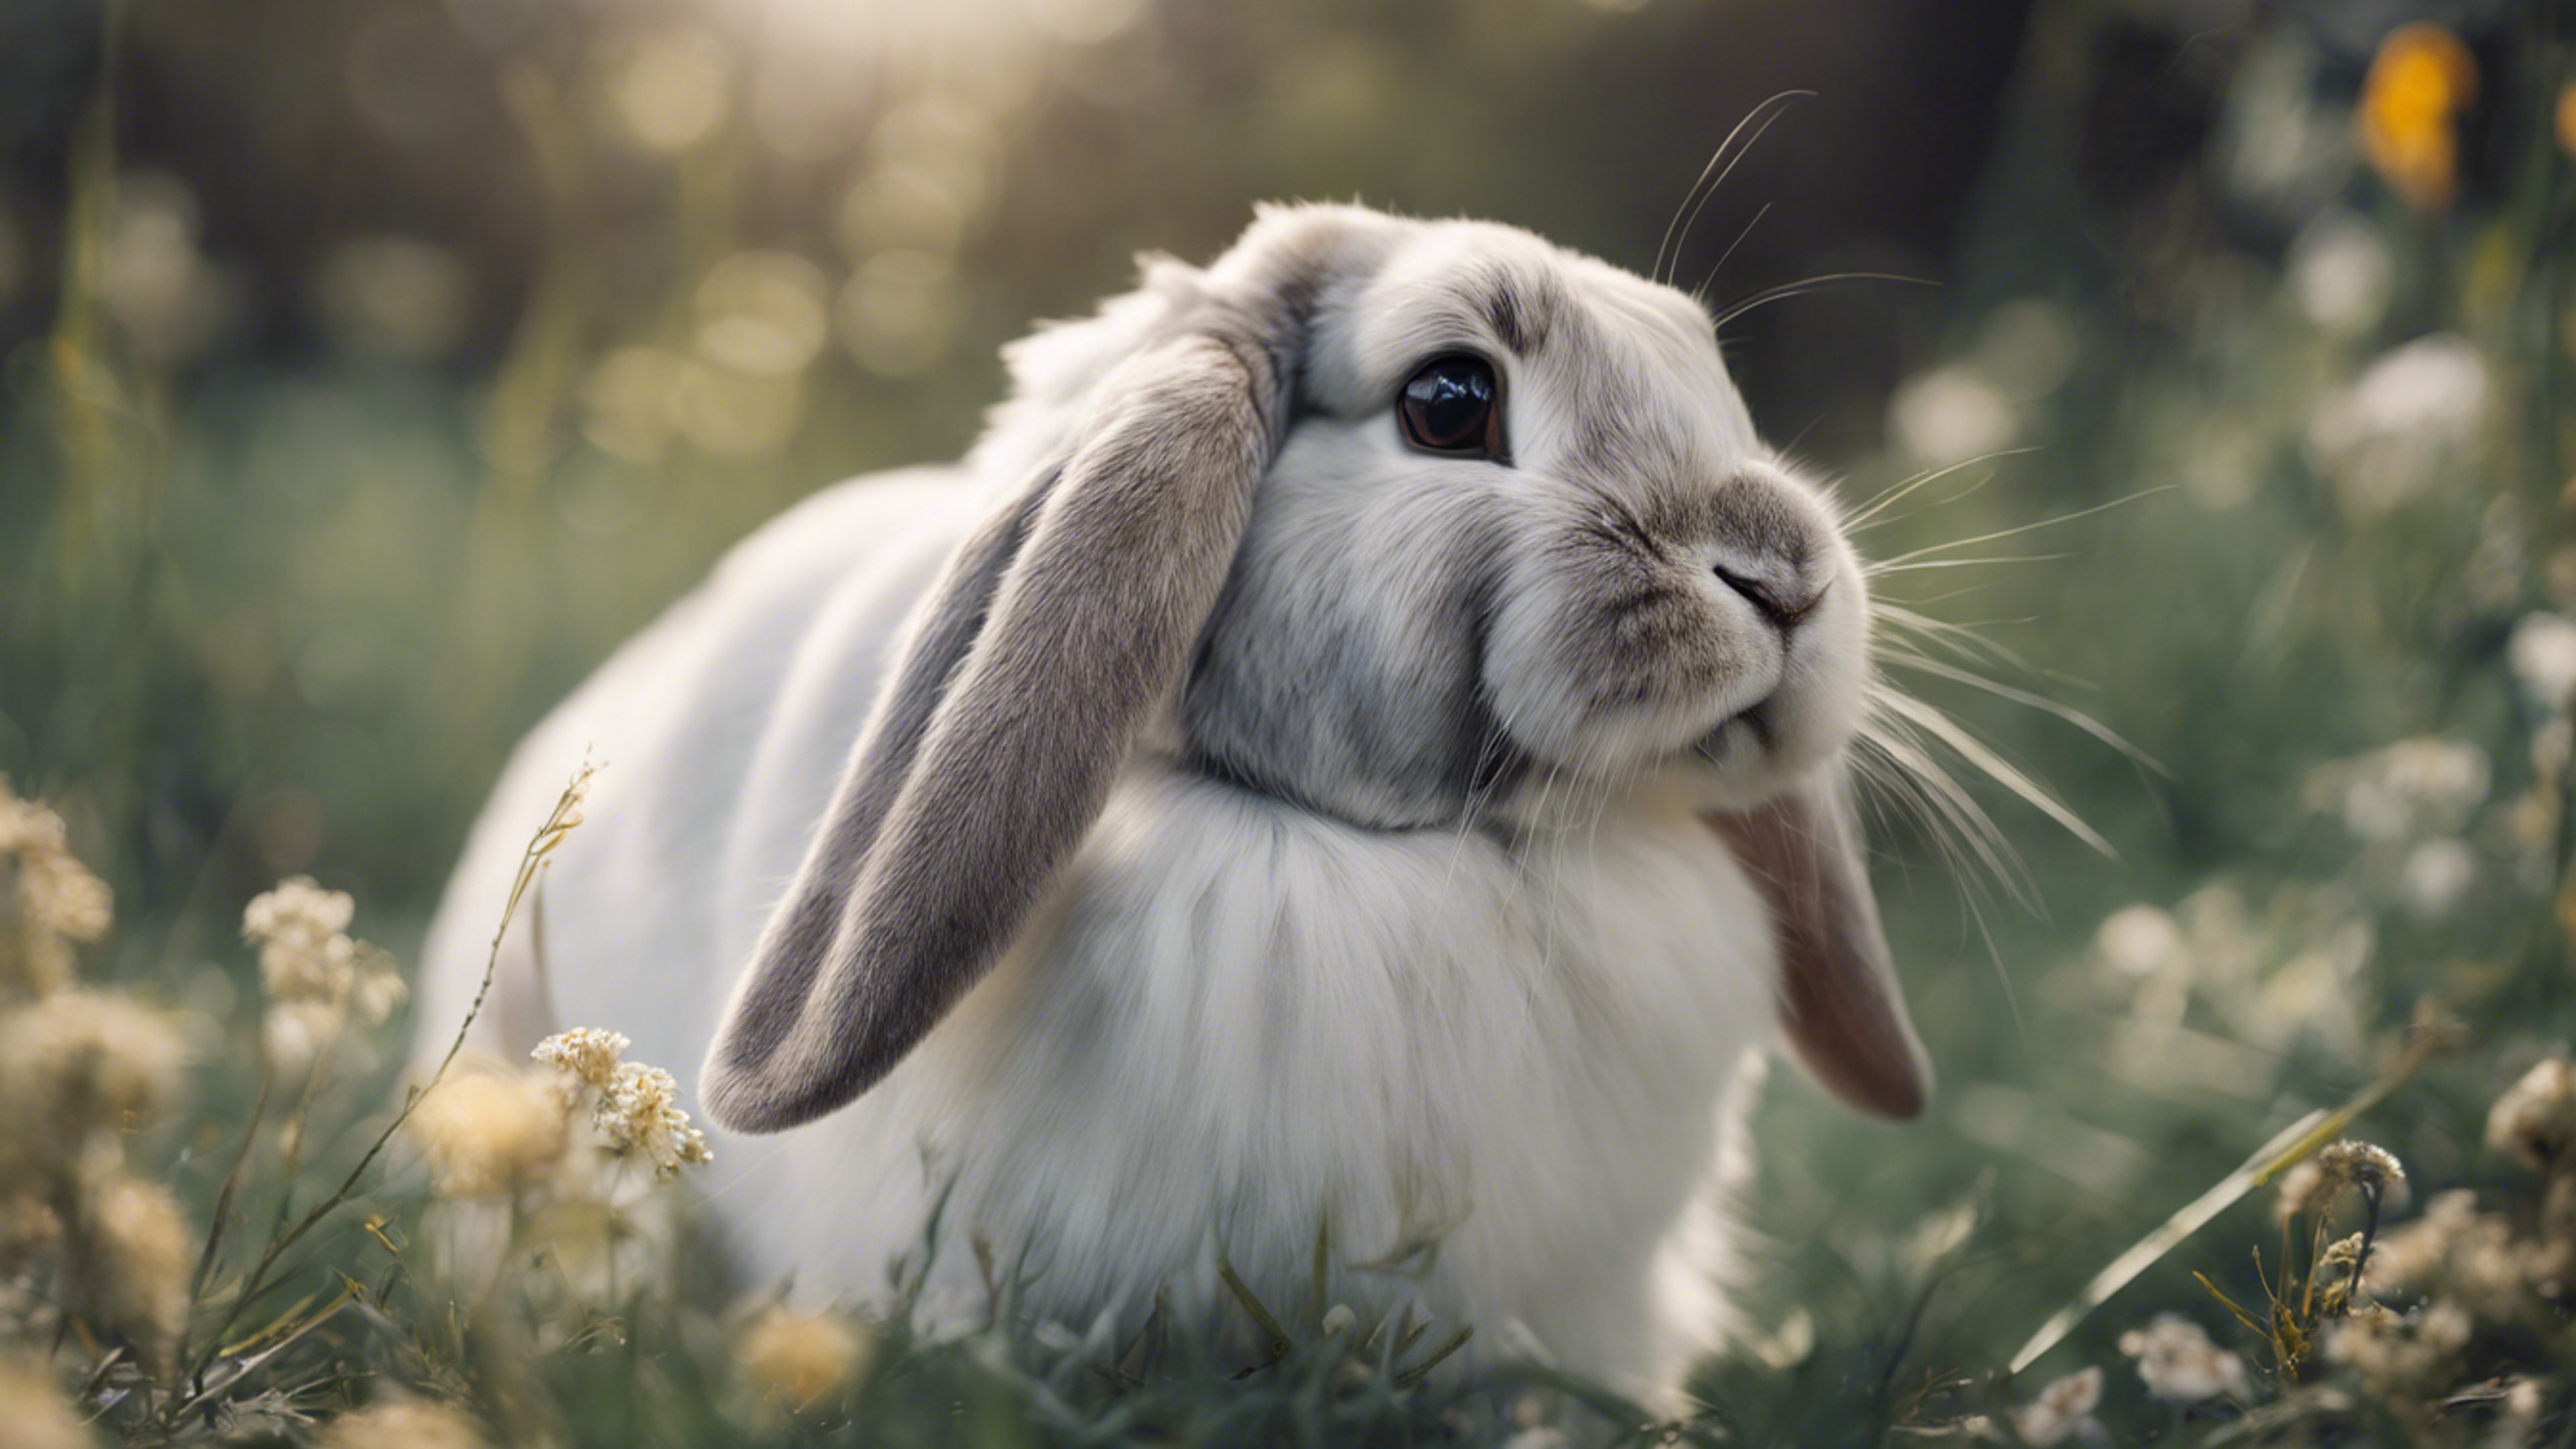 A portrait of a regal lop-eared rabbit with a shining silver coat. Wallpaper[43184d22ad35468da6a8]